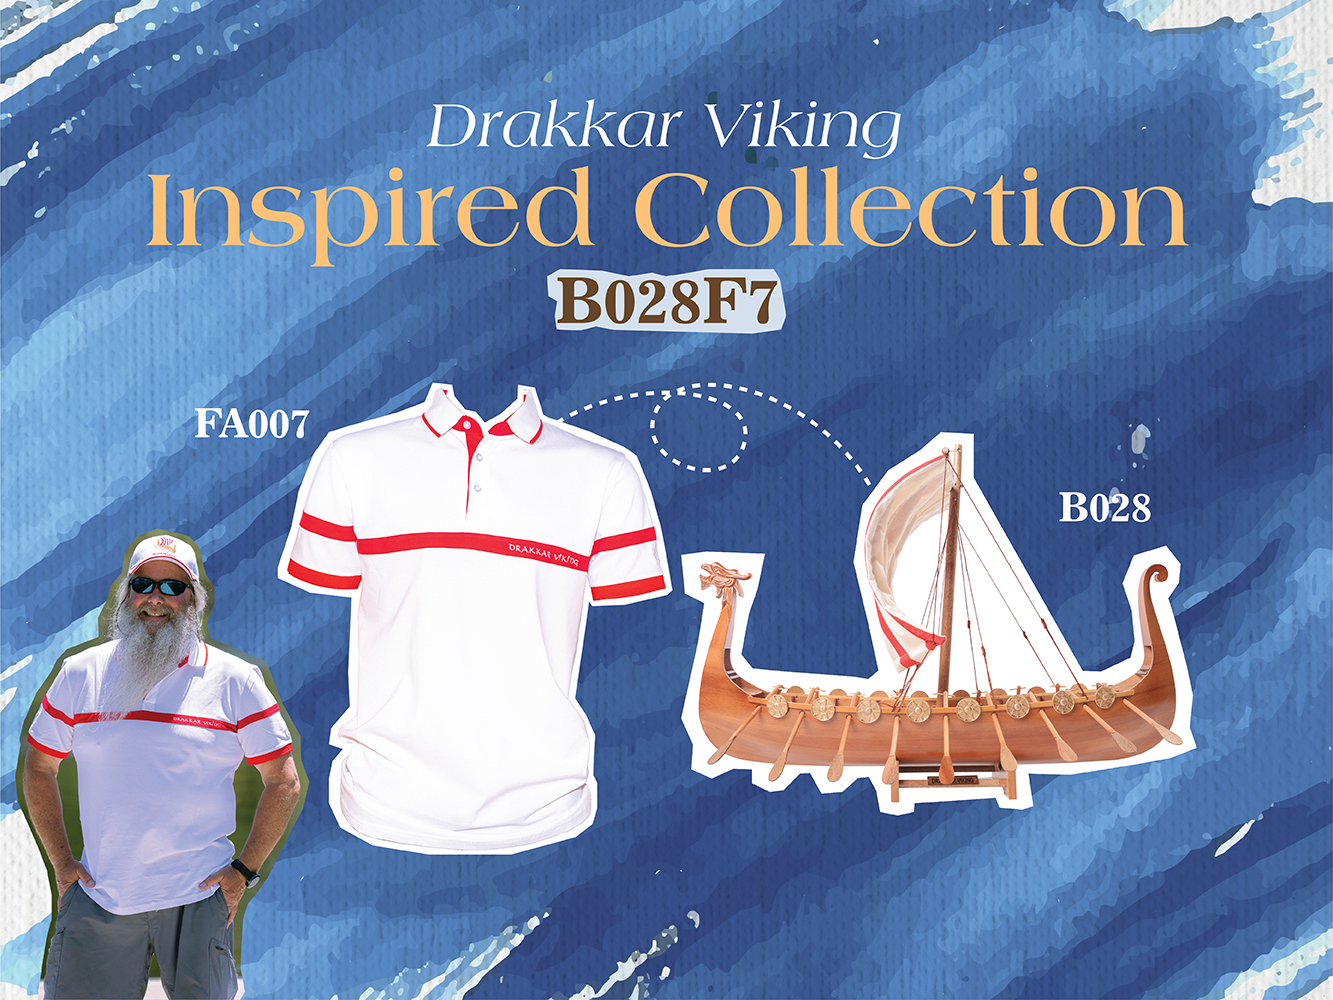 B028F7 Drakkar Viking Combo: A Model and Polo Shirt Set b028f7-drakkar-viking-combo-a-model-and-polo-shirt-set-l01.jpg